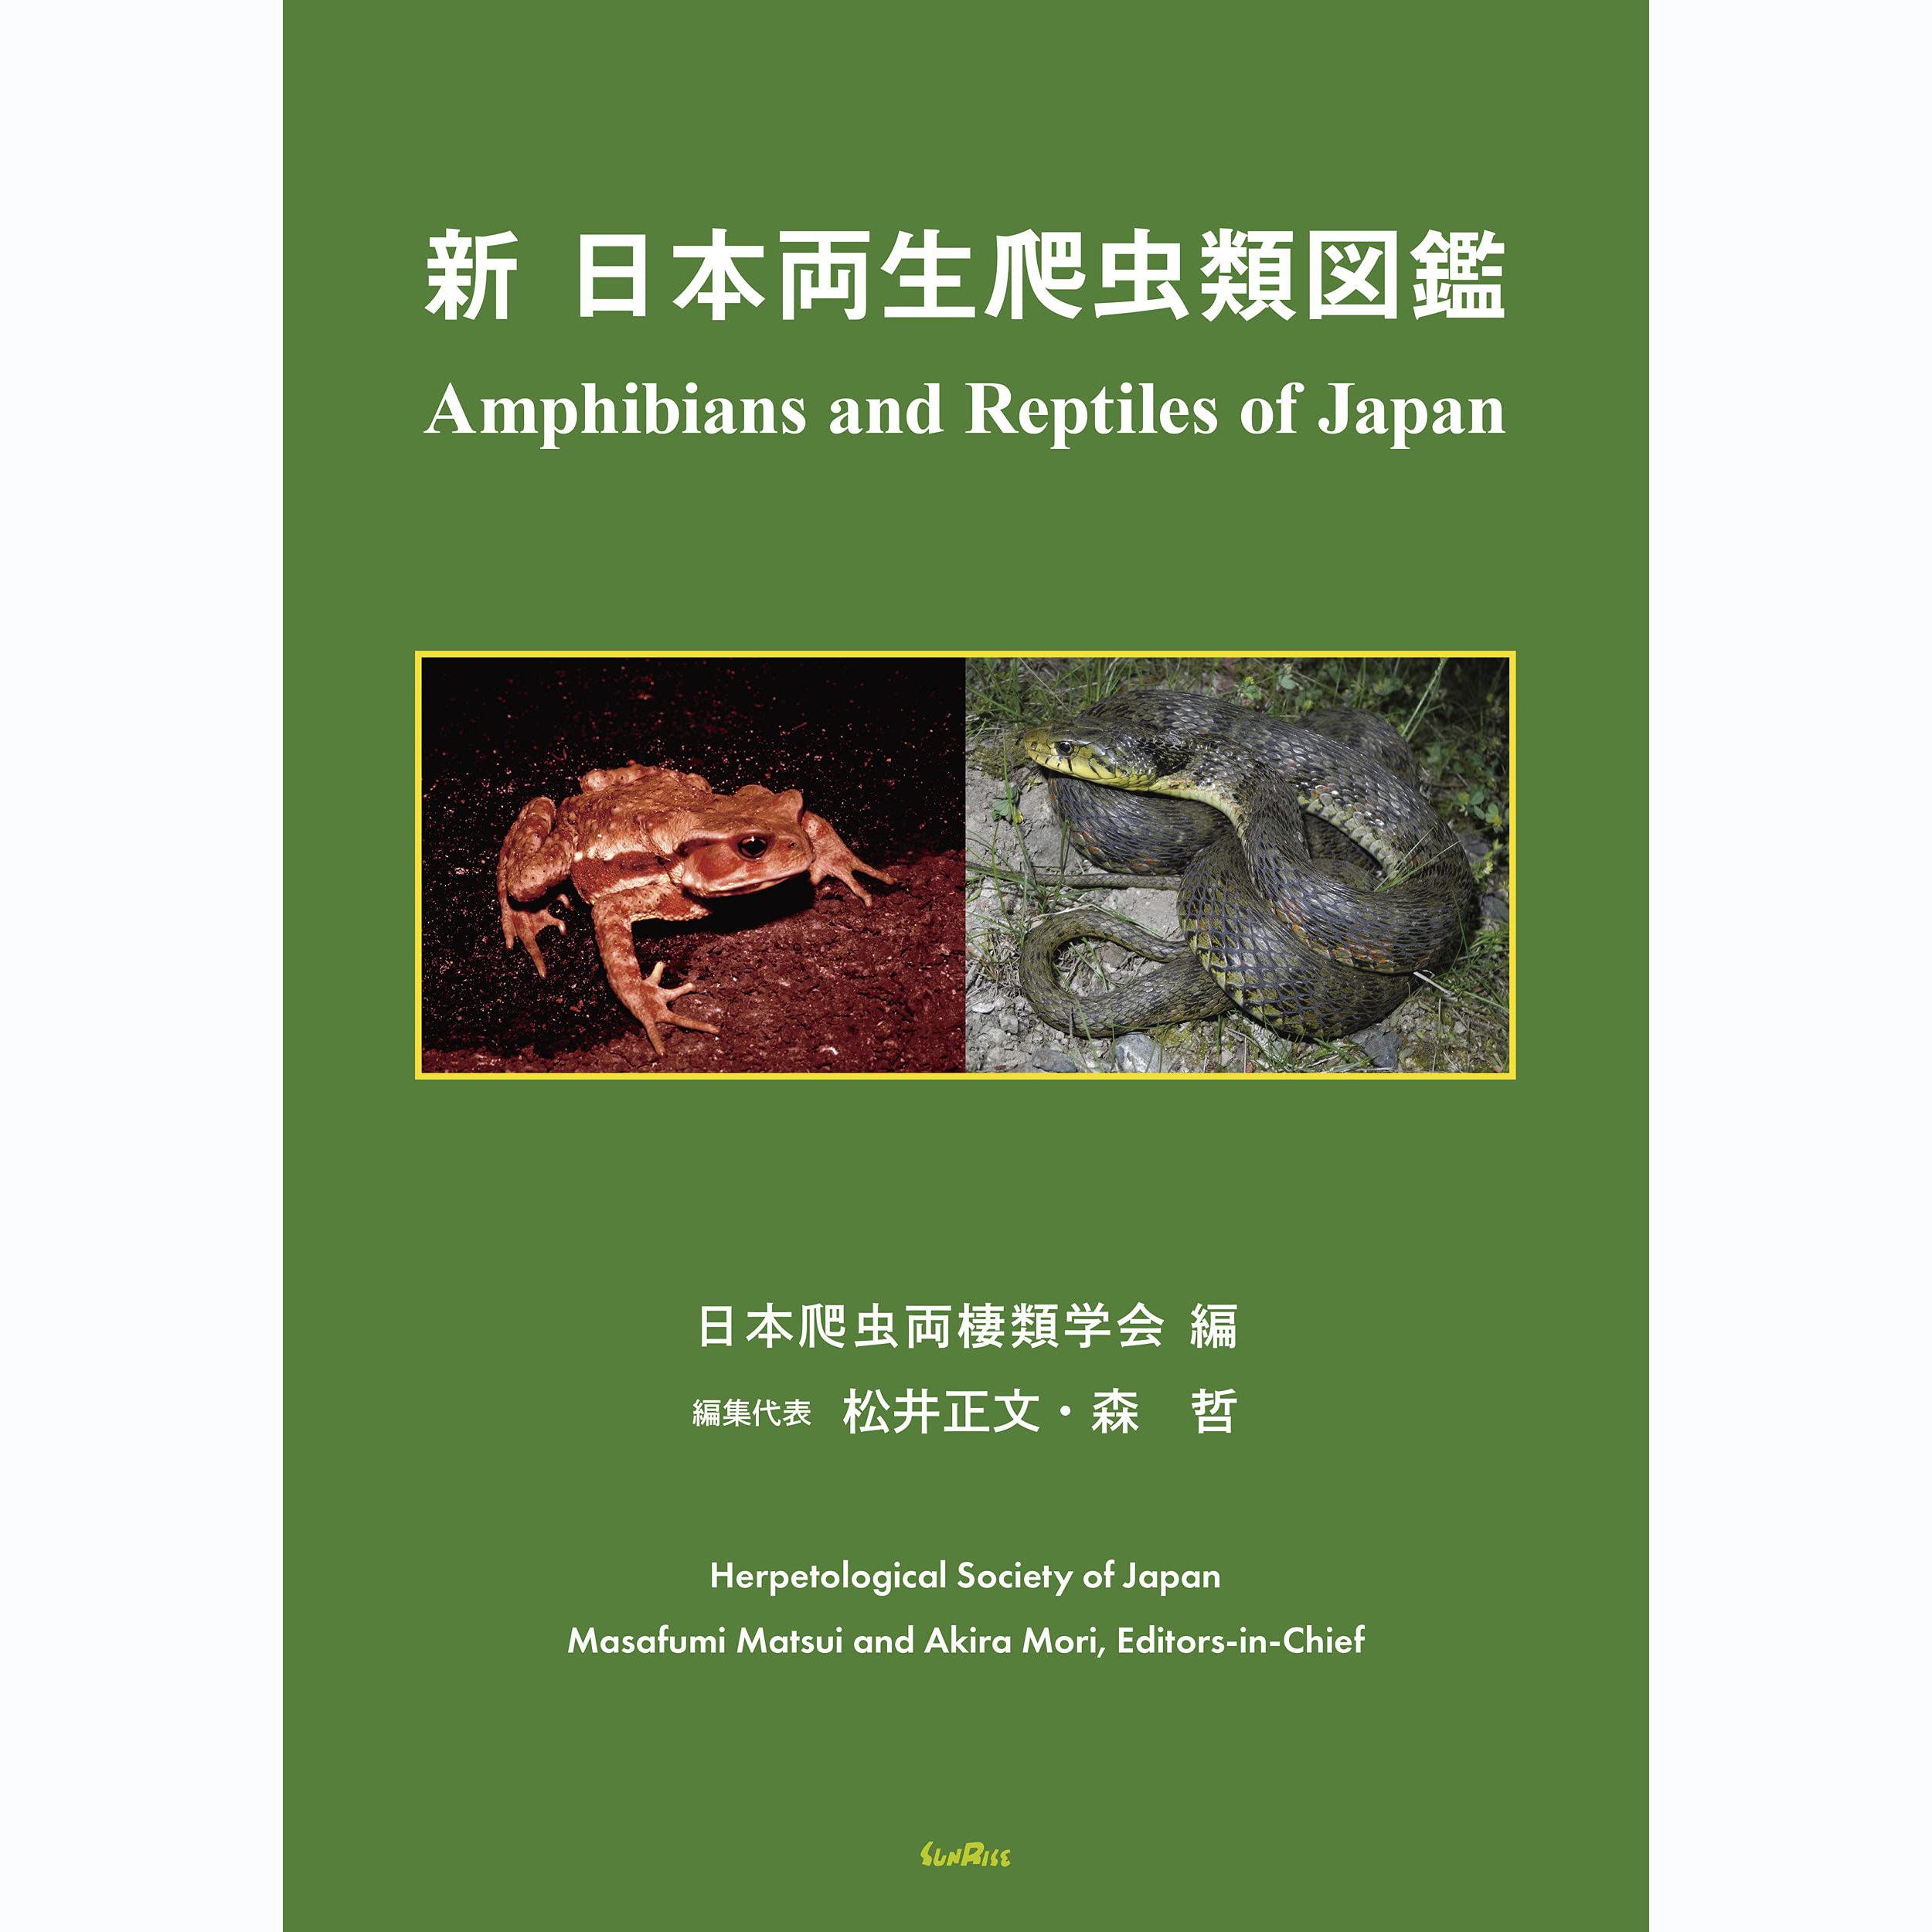 现货 新日本両生爬虫類図鑑 两栖纲爬行动物百科大全图书Amphibia